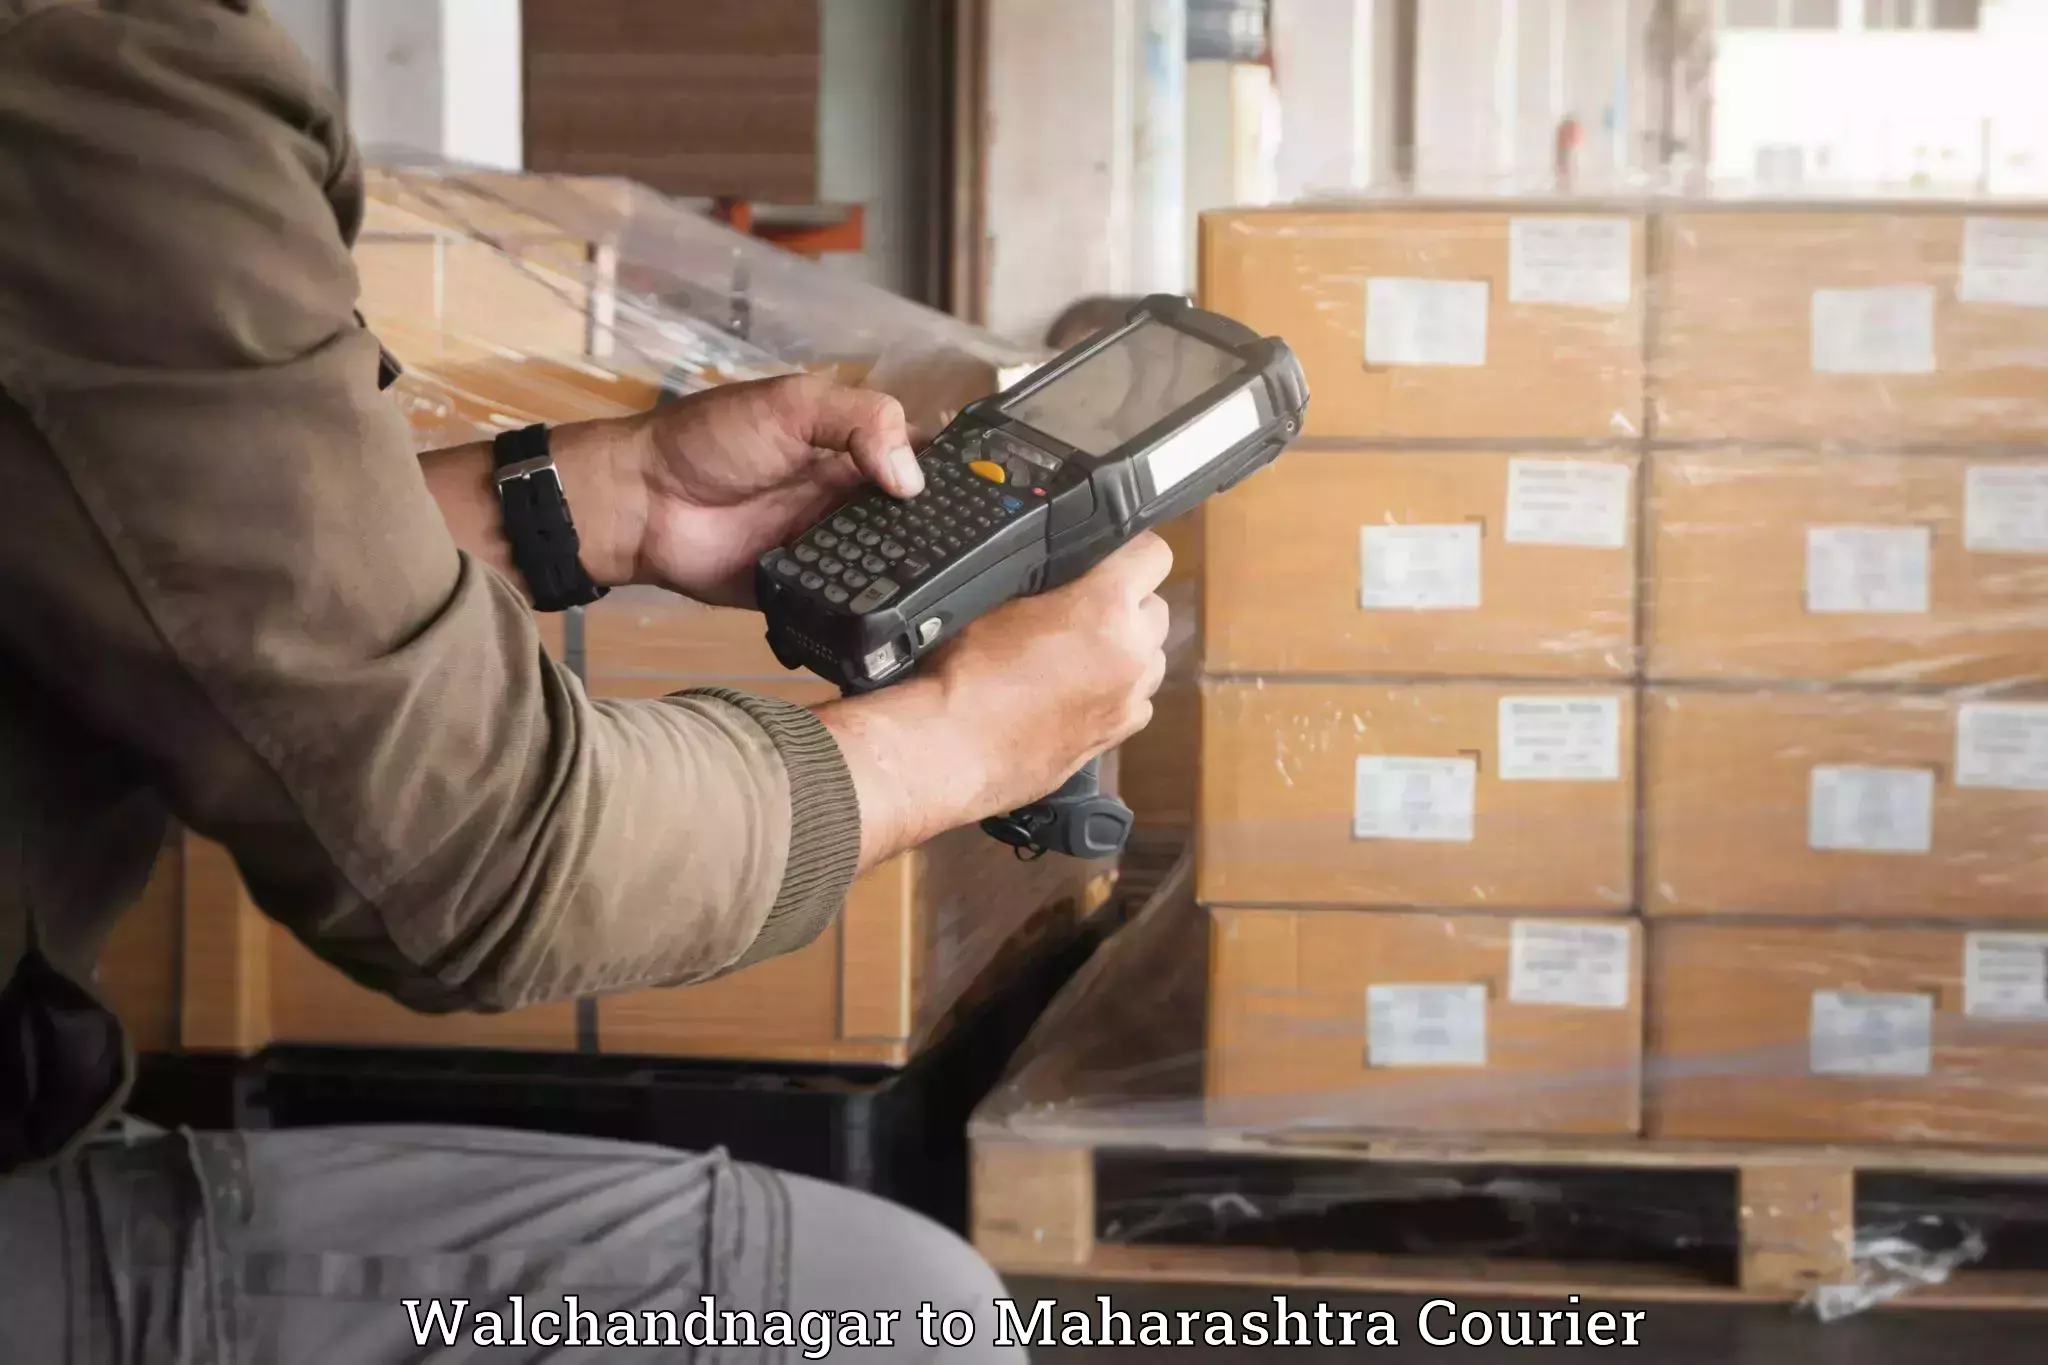 Luggage transport consultancy Walchandnagar to Sindhudurg